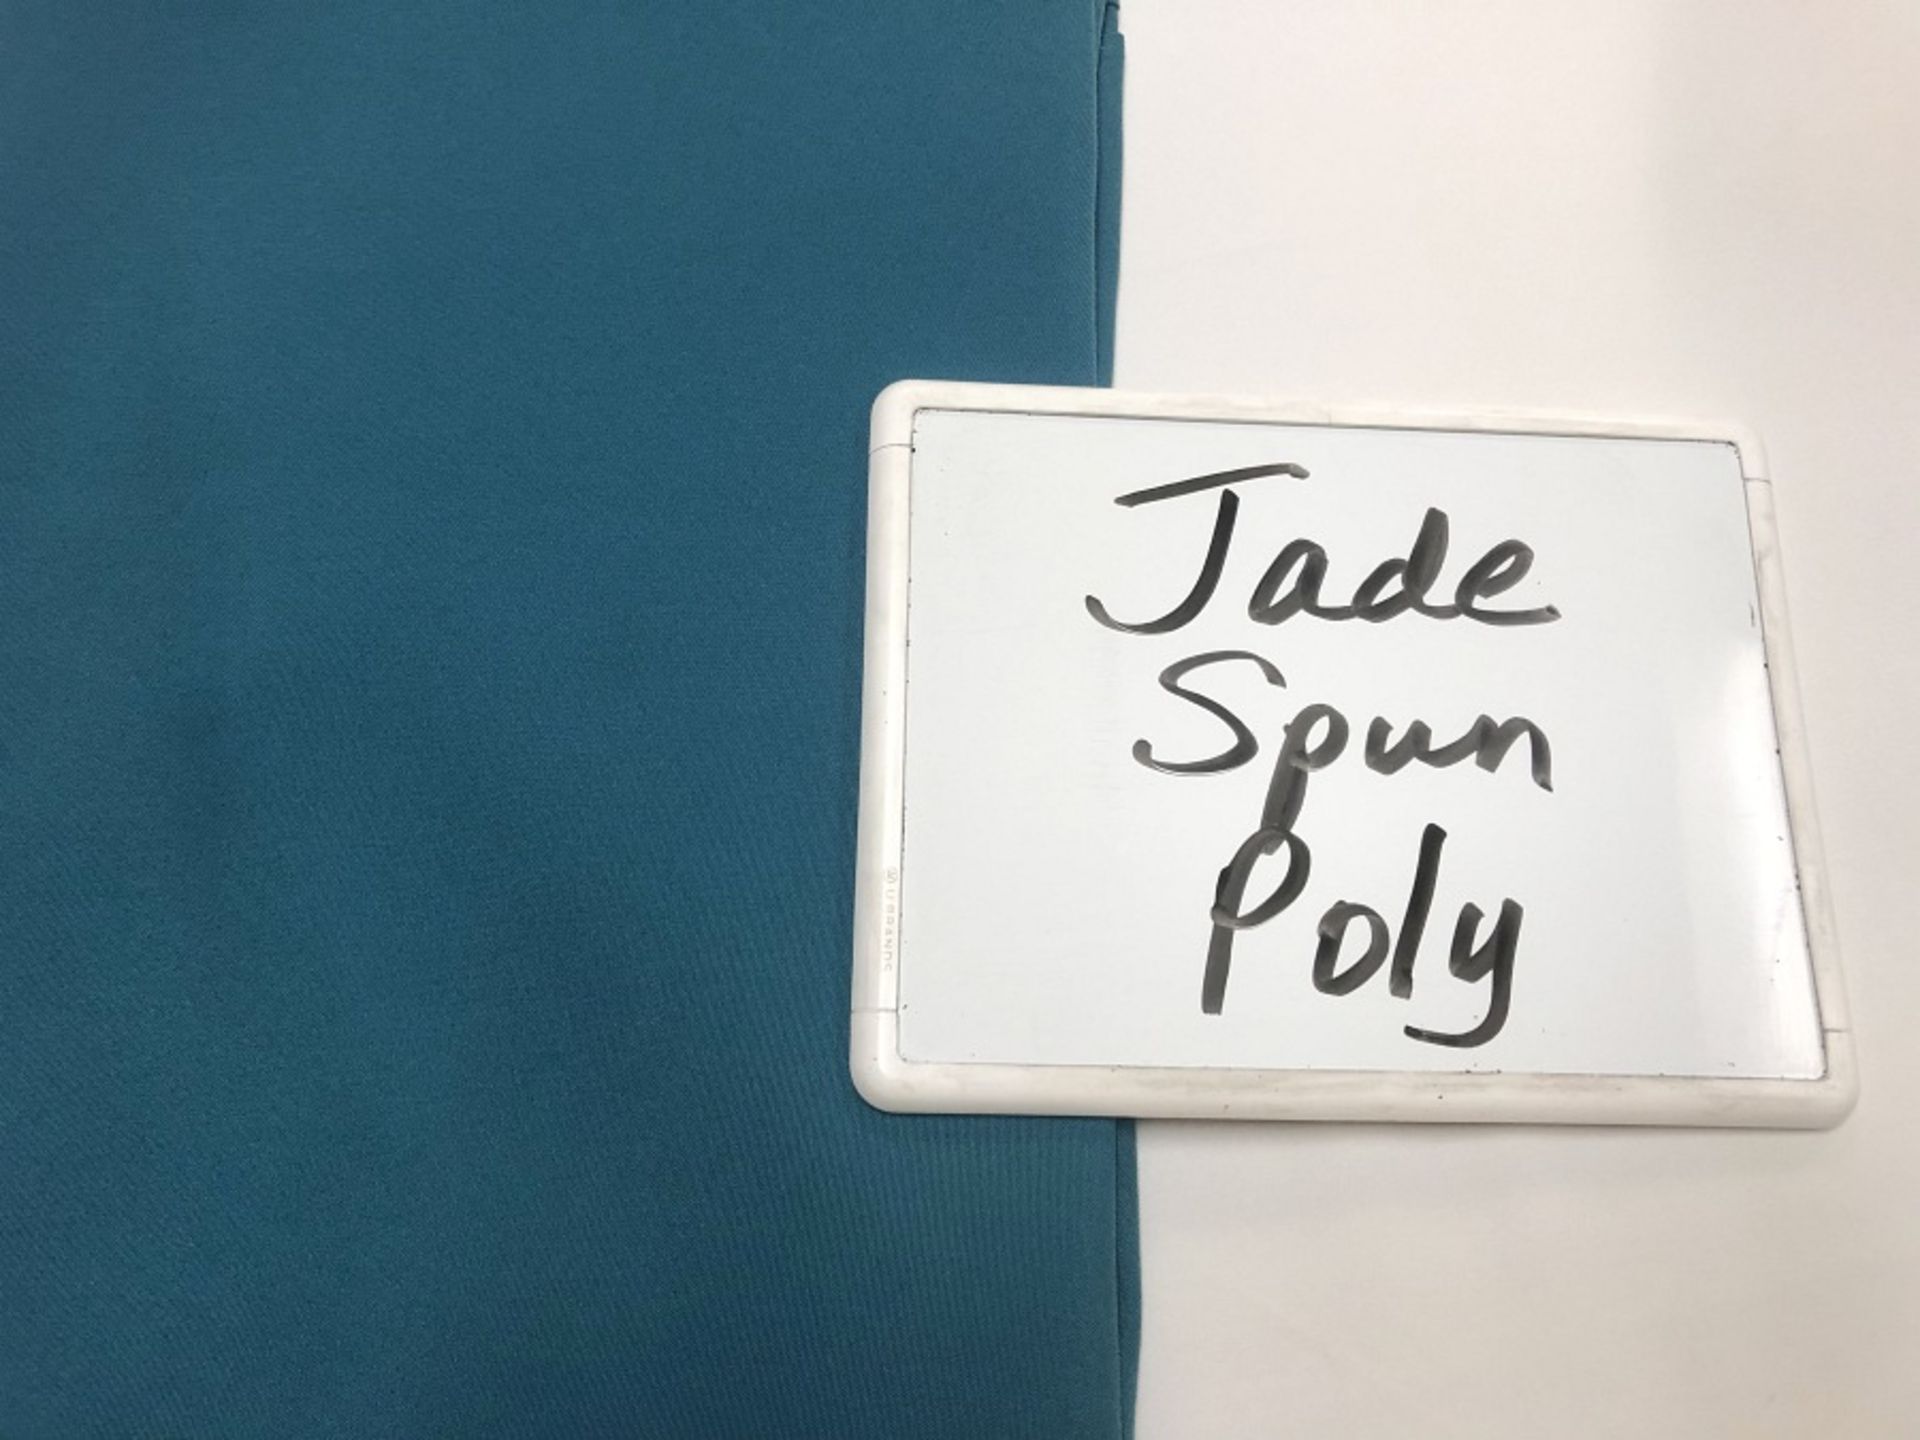 Jade Spun Poly, Lot of 64 Napkin